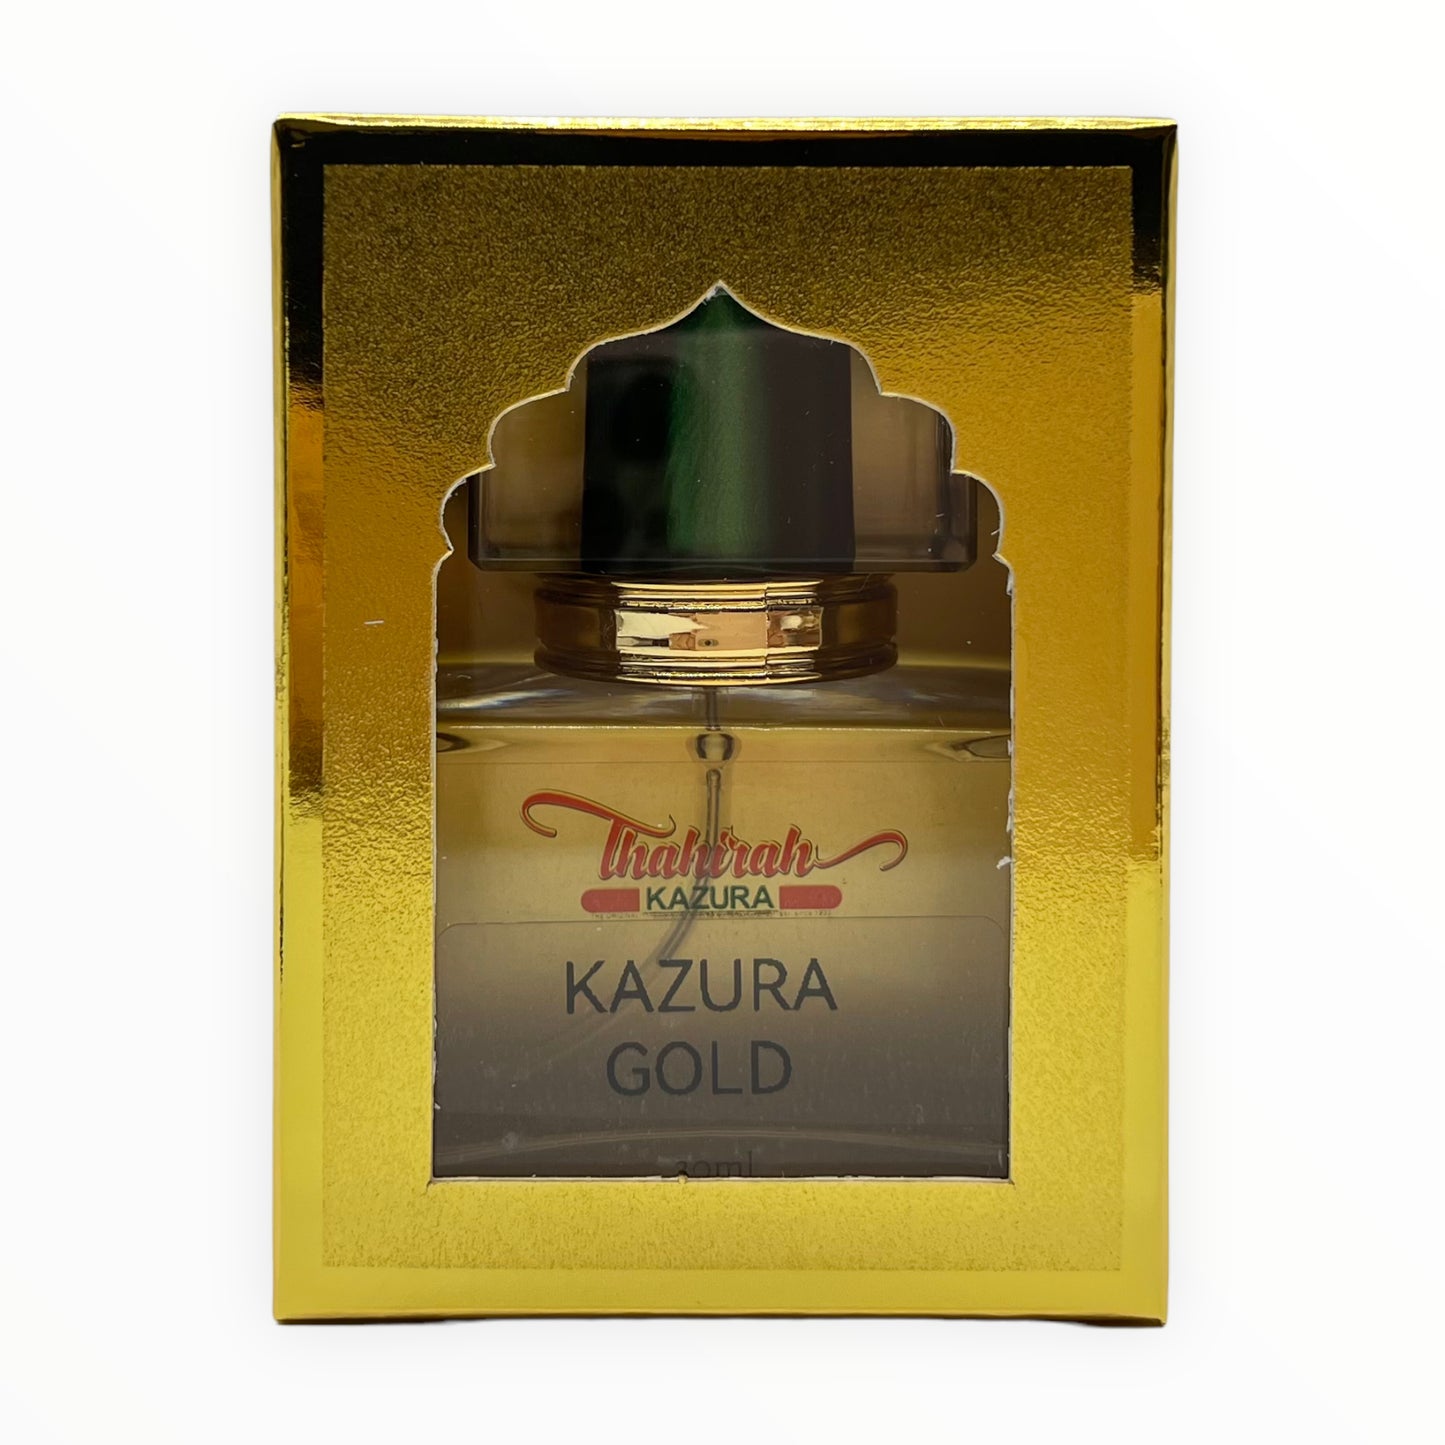 KAZURA GOLD